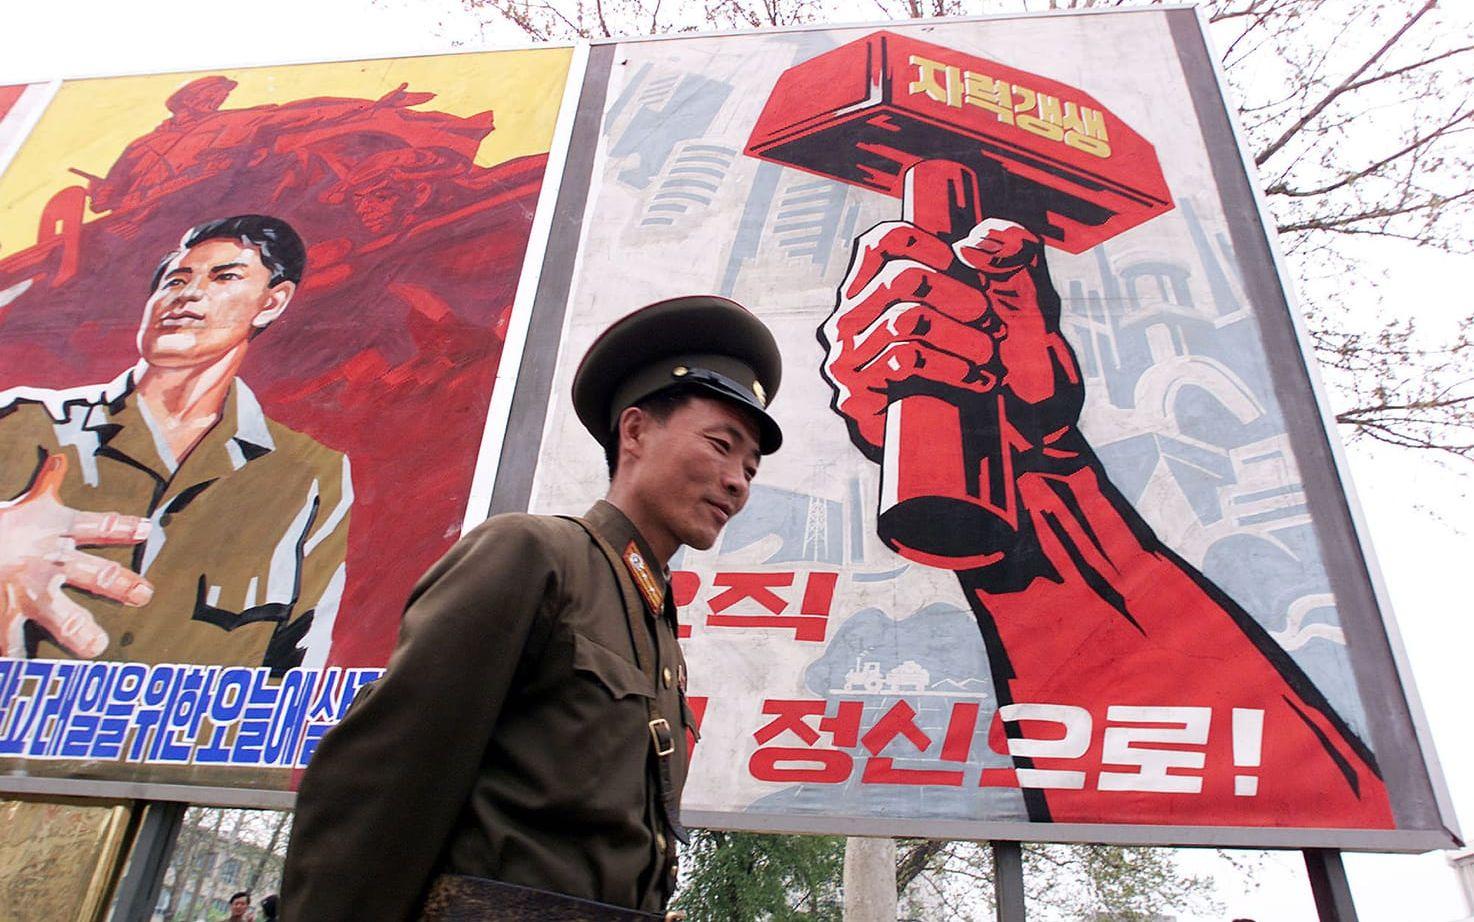 Nordkoreansk soldat poserar vid propagandatavla i Pyongyang. Bild: TT